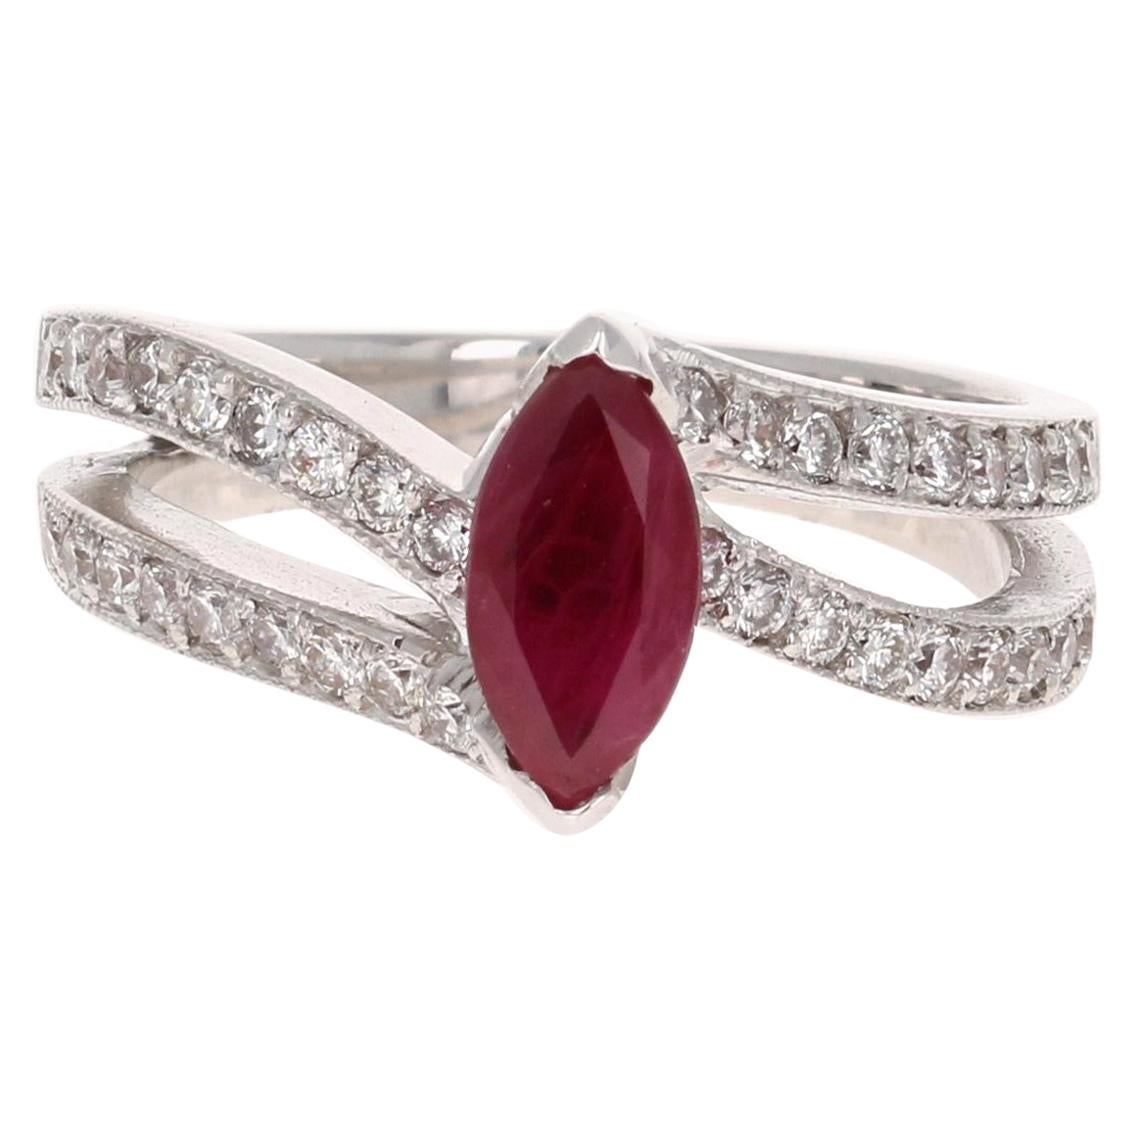 1.48 Carat Ruby Diamond 18 Karat White Gold Ring For Sale